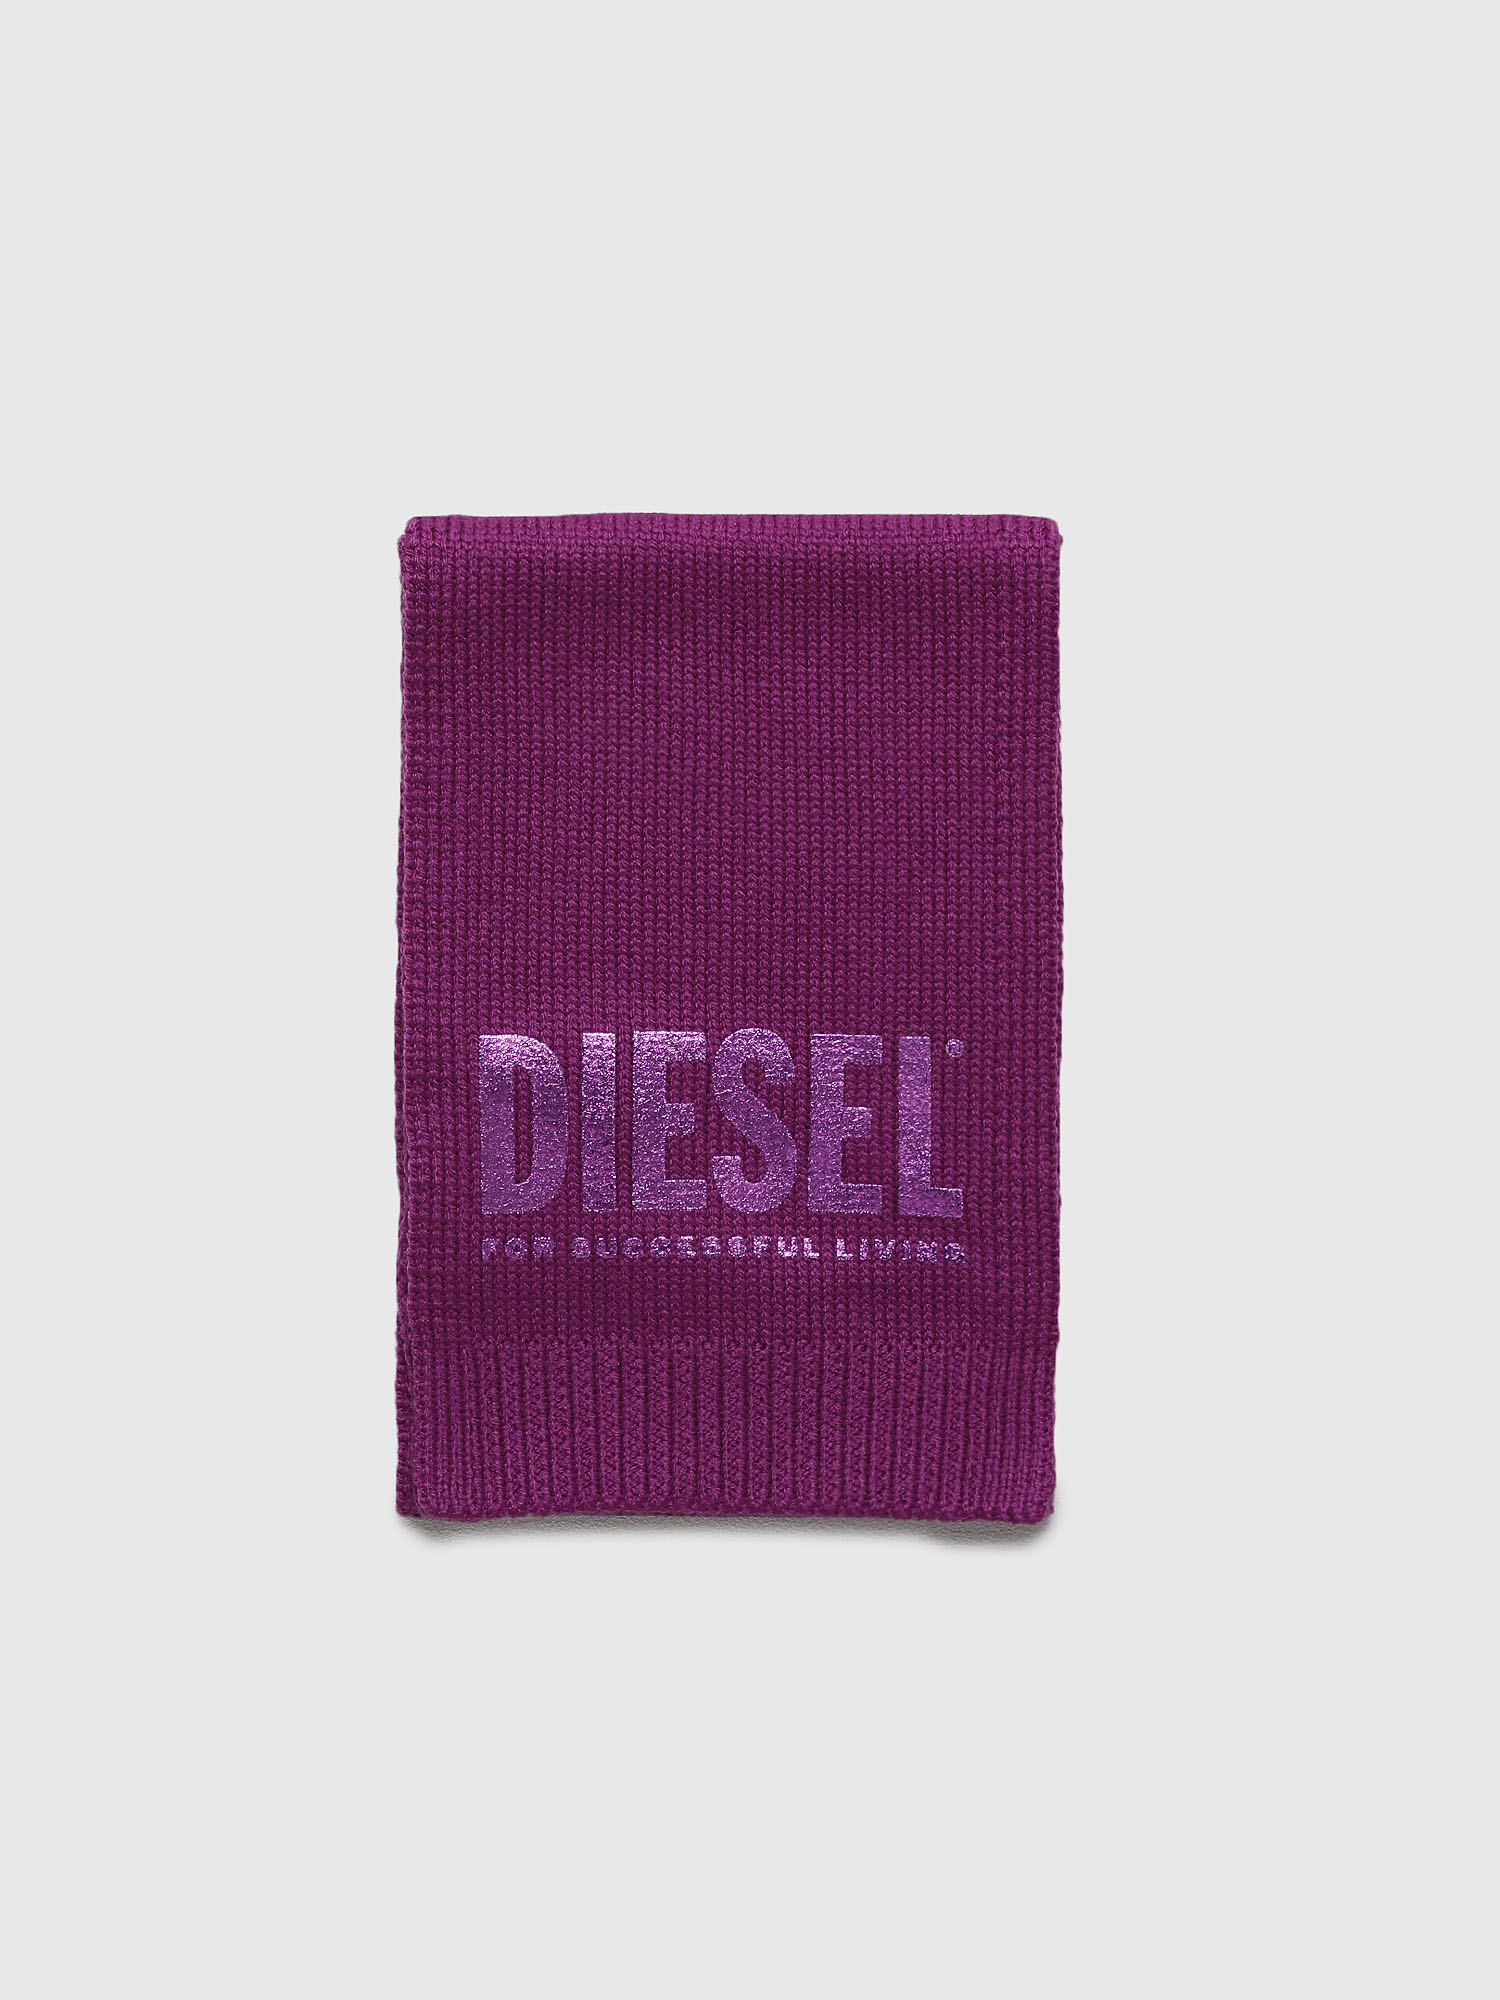 Diesel - RONNEB, Violet - Image 1